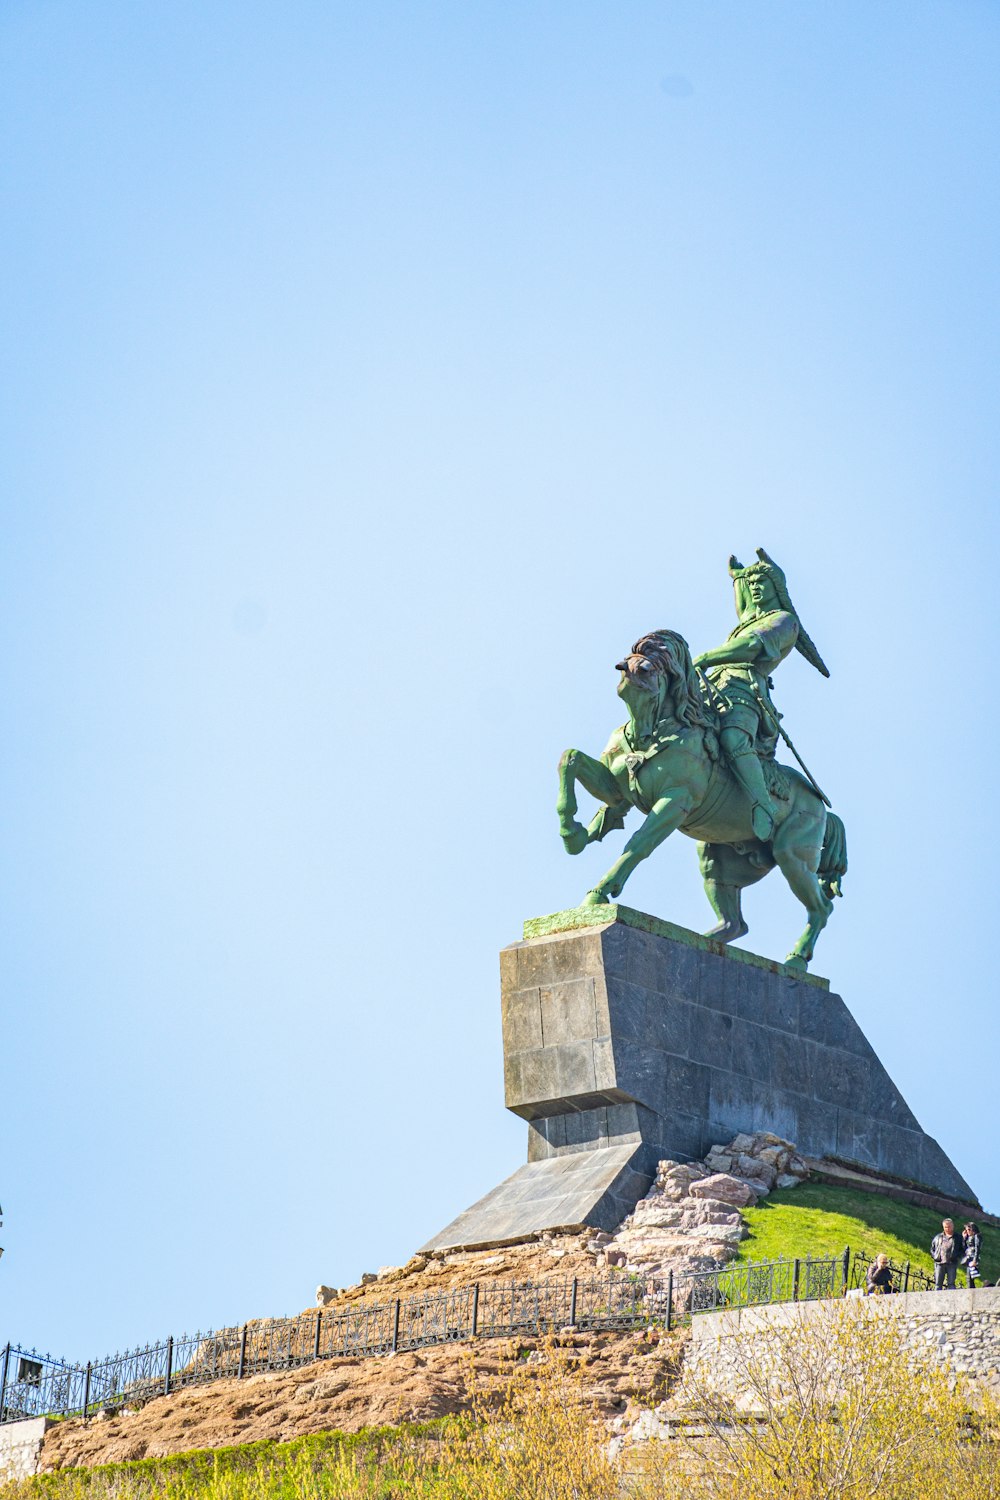 Eine Statue einer Person, die auf einem Pferd auf einer Steinmauer reitet